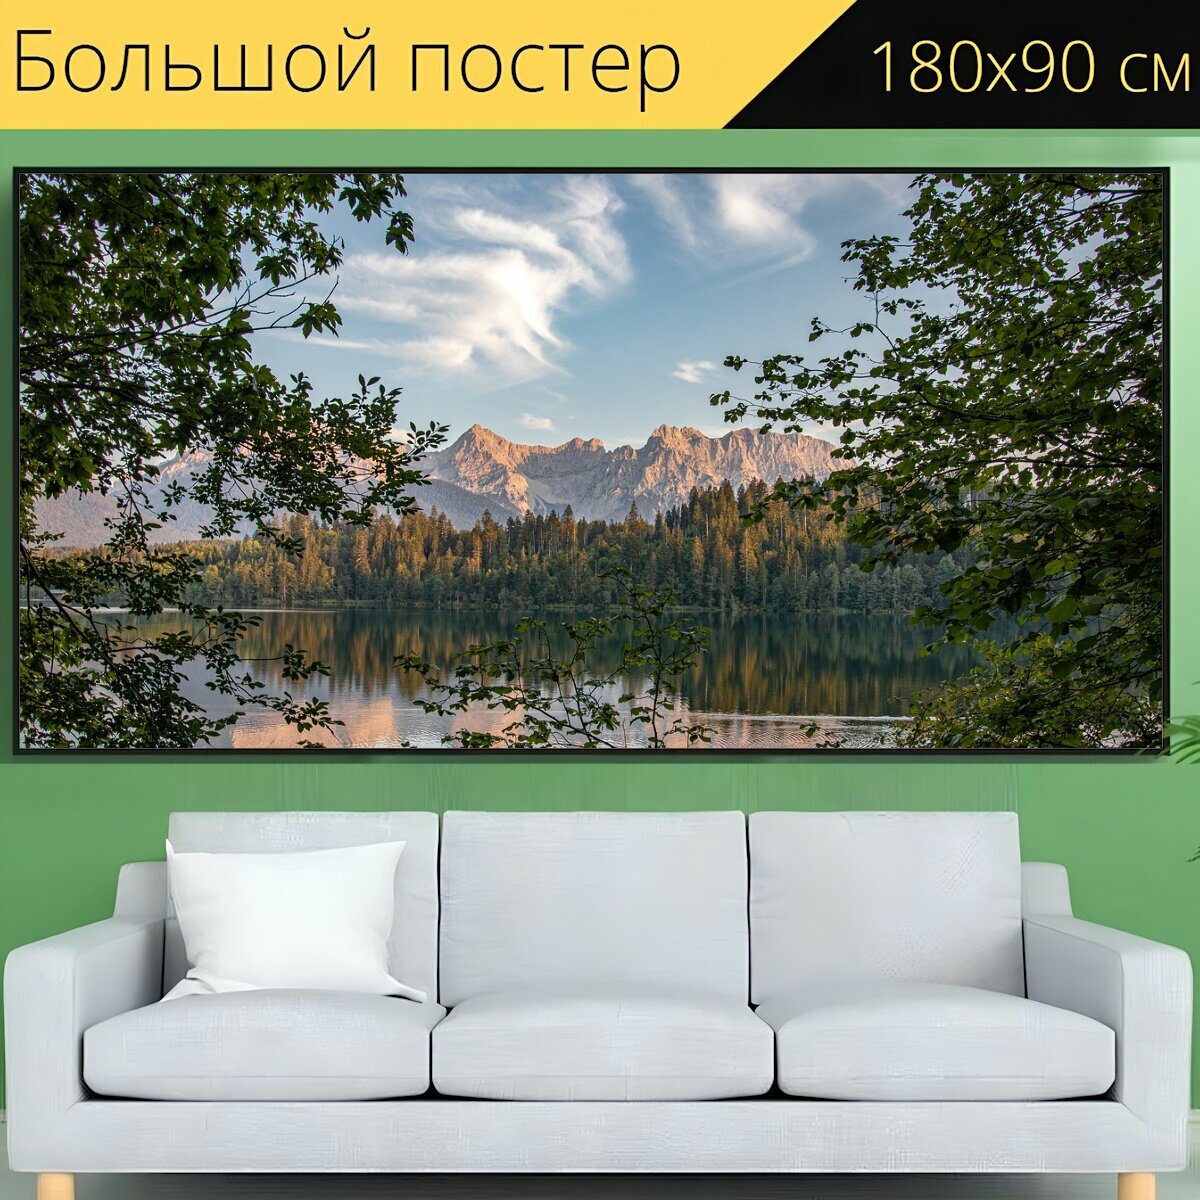 Большой постер "Озеро, горы, деревья" 180 x 90 см. для интерьера